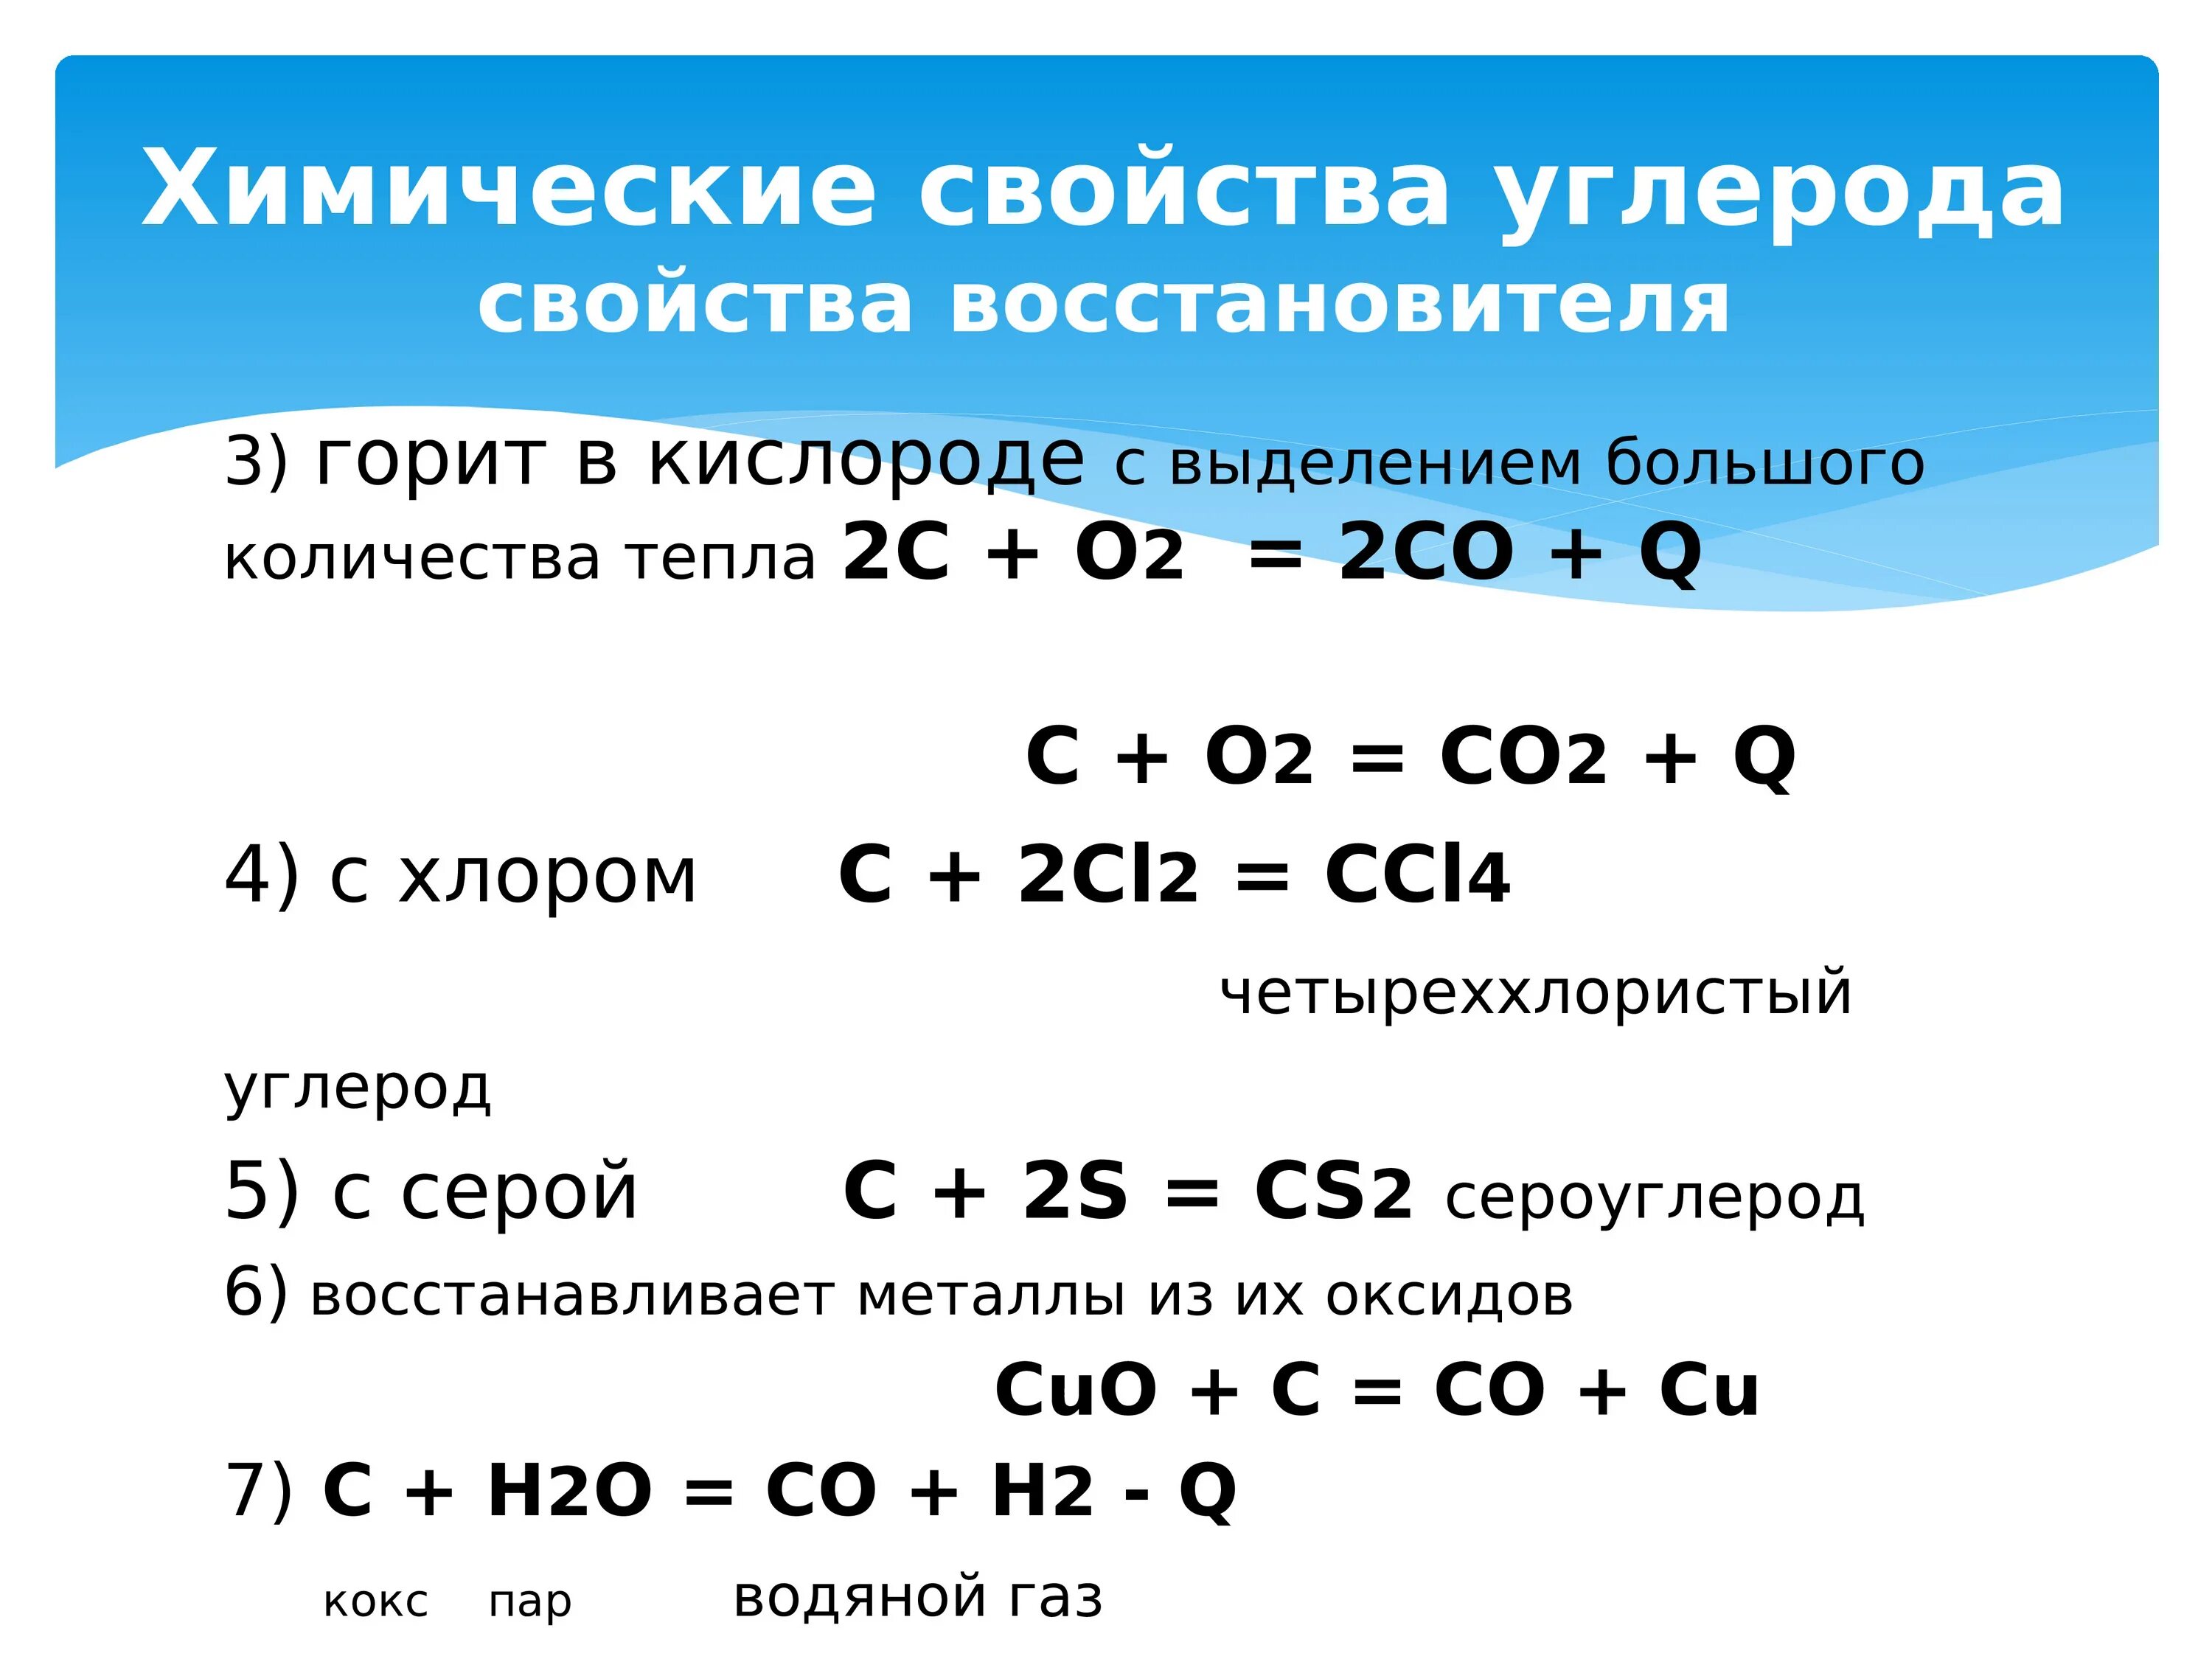 Химические свойства углерода реакции. Химические свойства углерода таблица. Химические свойства углерода уравнения. Углерод соединения углерода. Кислород хим реакции